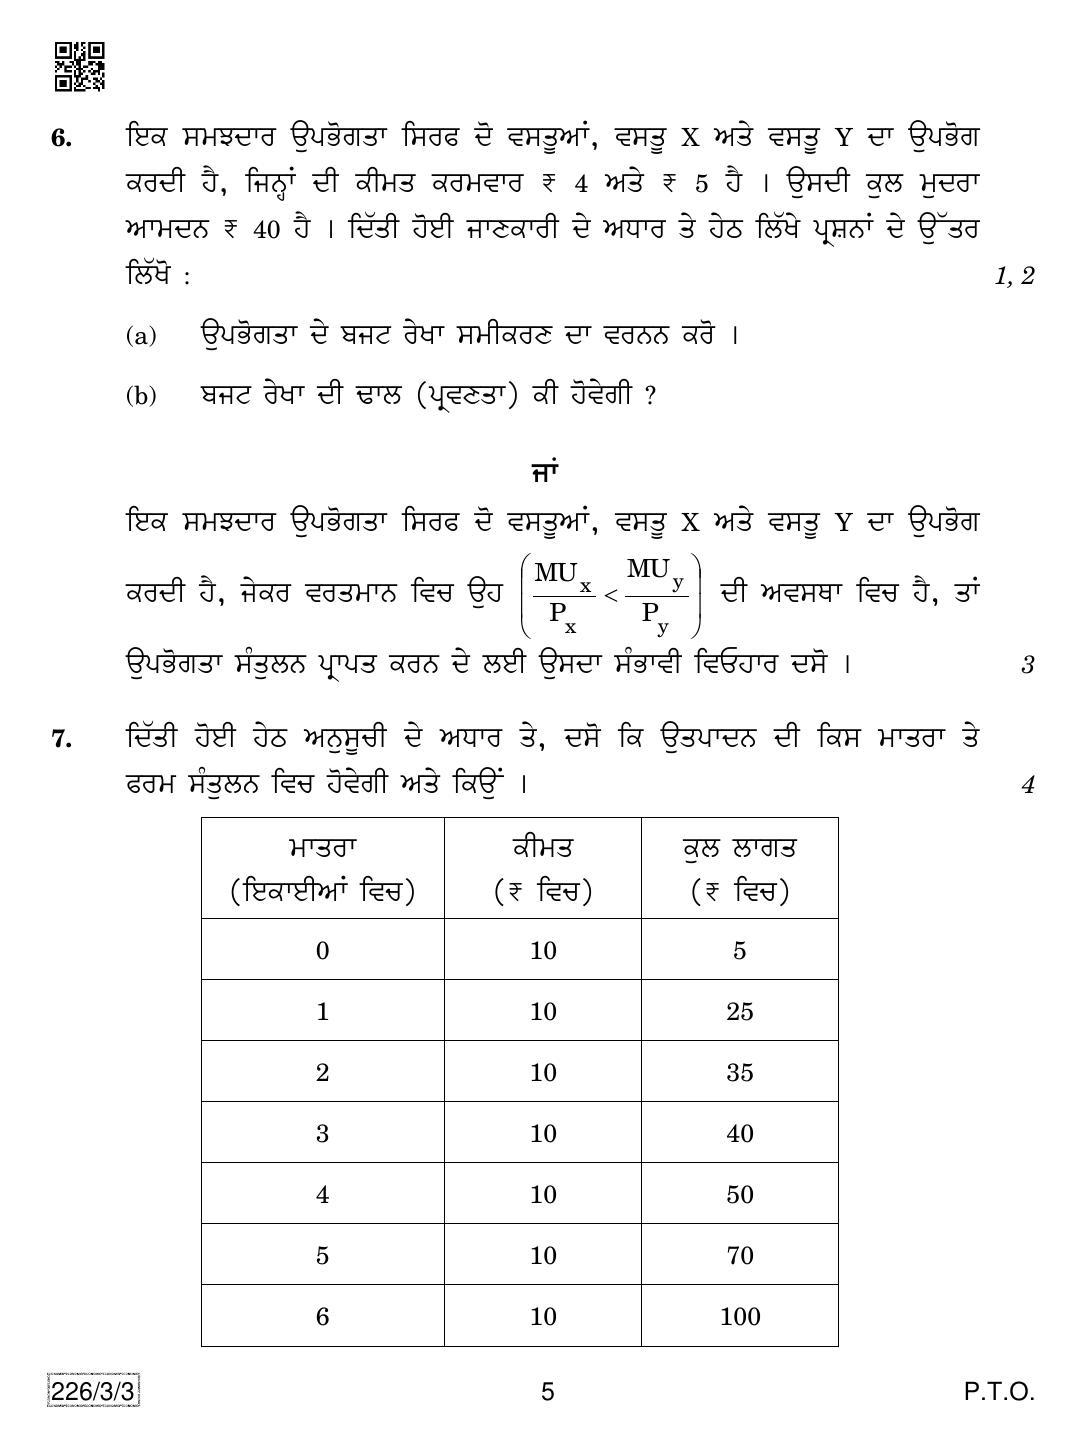 CBSE Class 12 226-3-3 Economics (Punjabi) 2019 Question Paper - Page 5